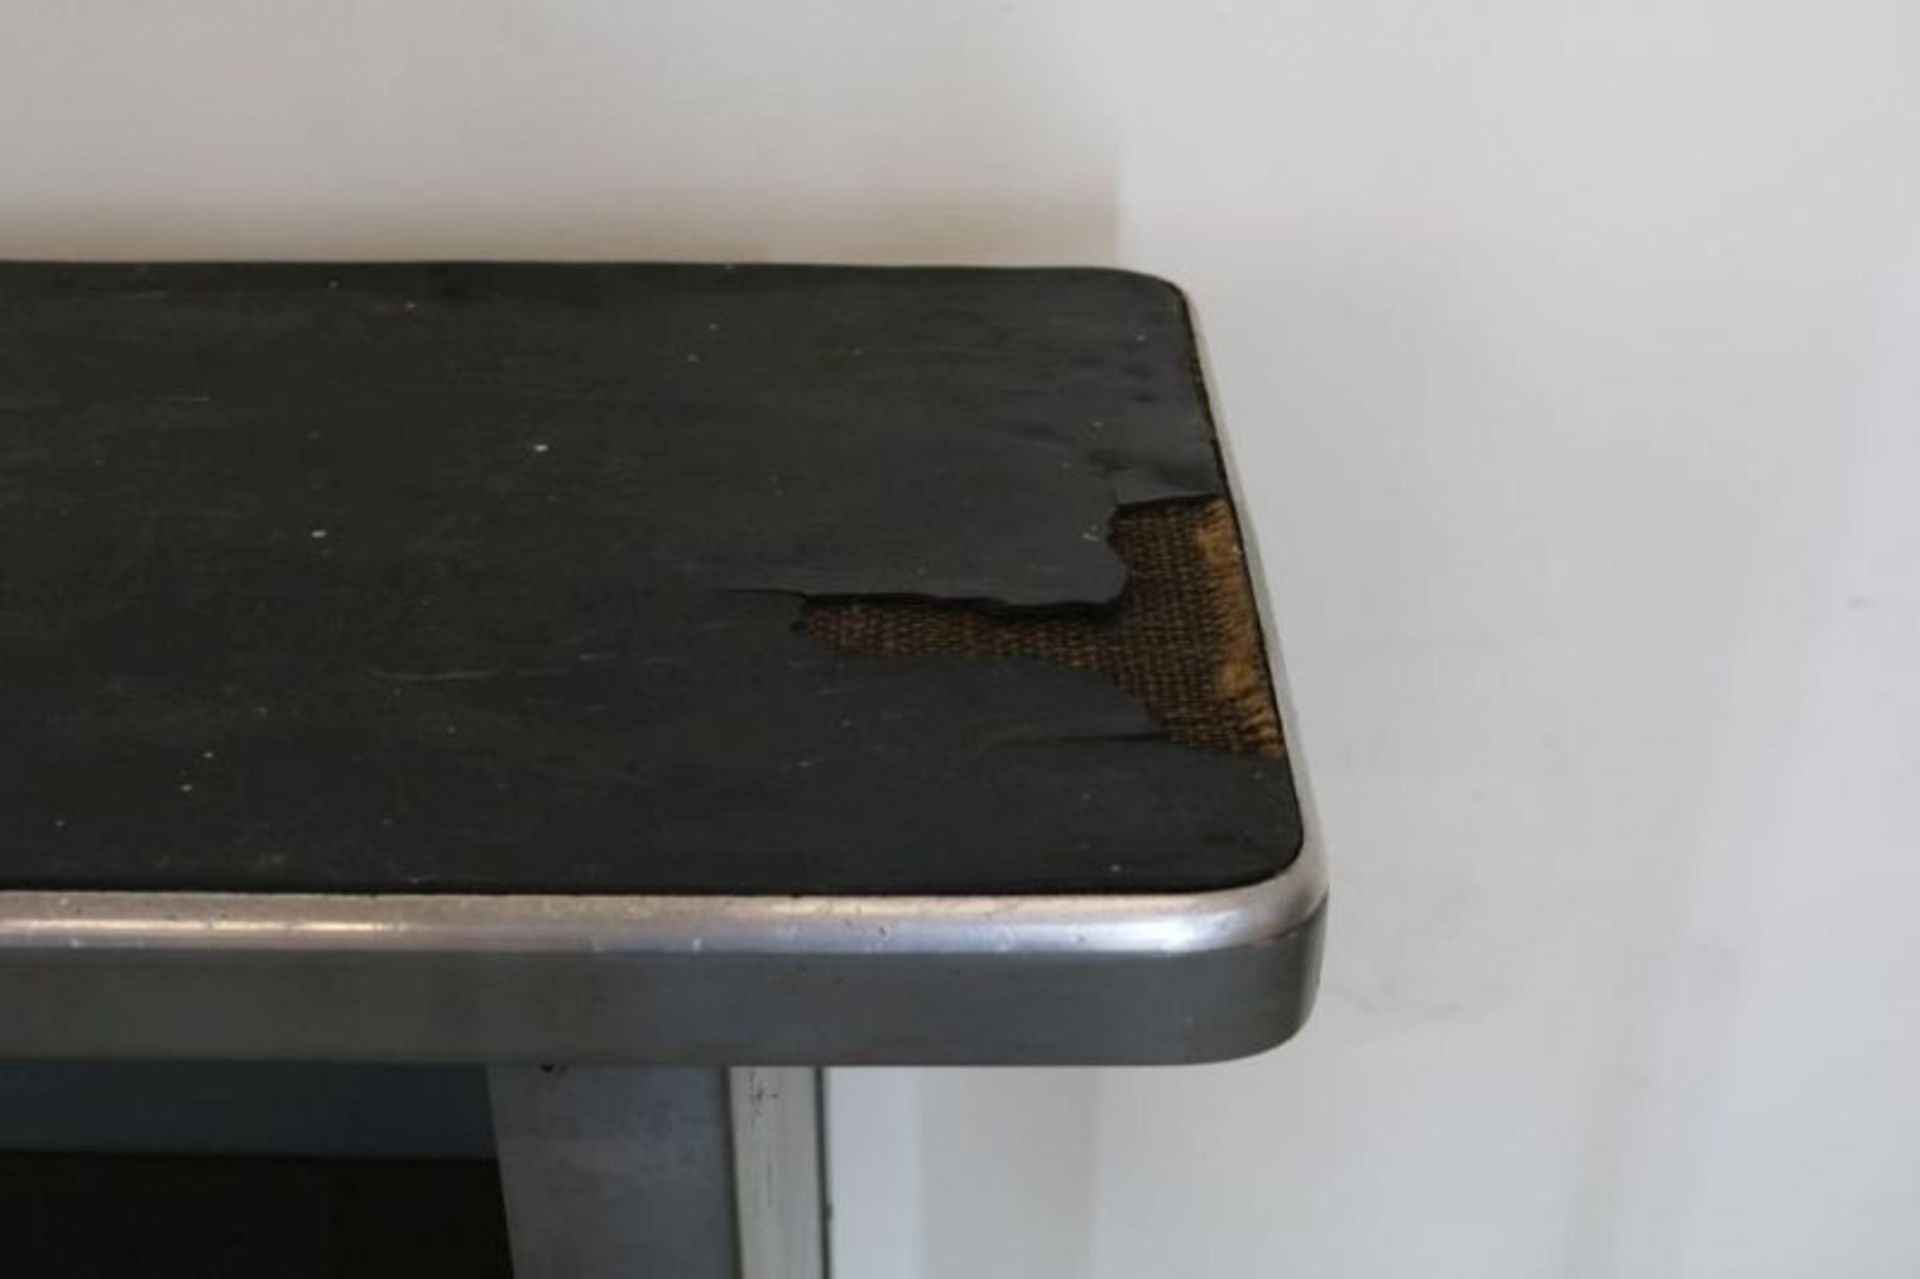 Metalen Gispen toonbank met linoleum blad, 30-er jaren, h. 115, br. 170, d. 36 cm. (blad beschadigd) - Bild 2 aus 3